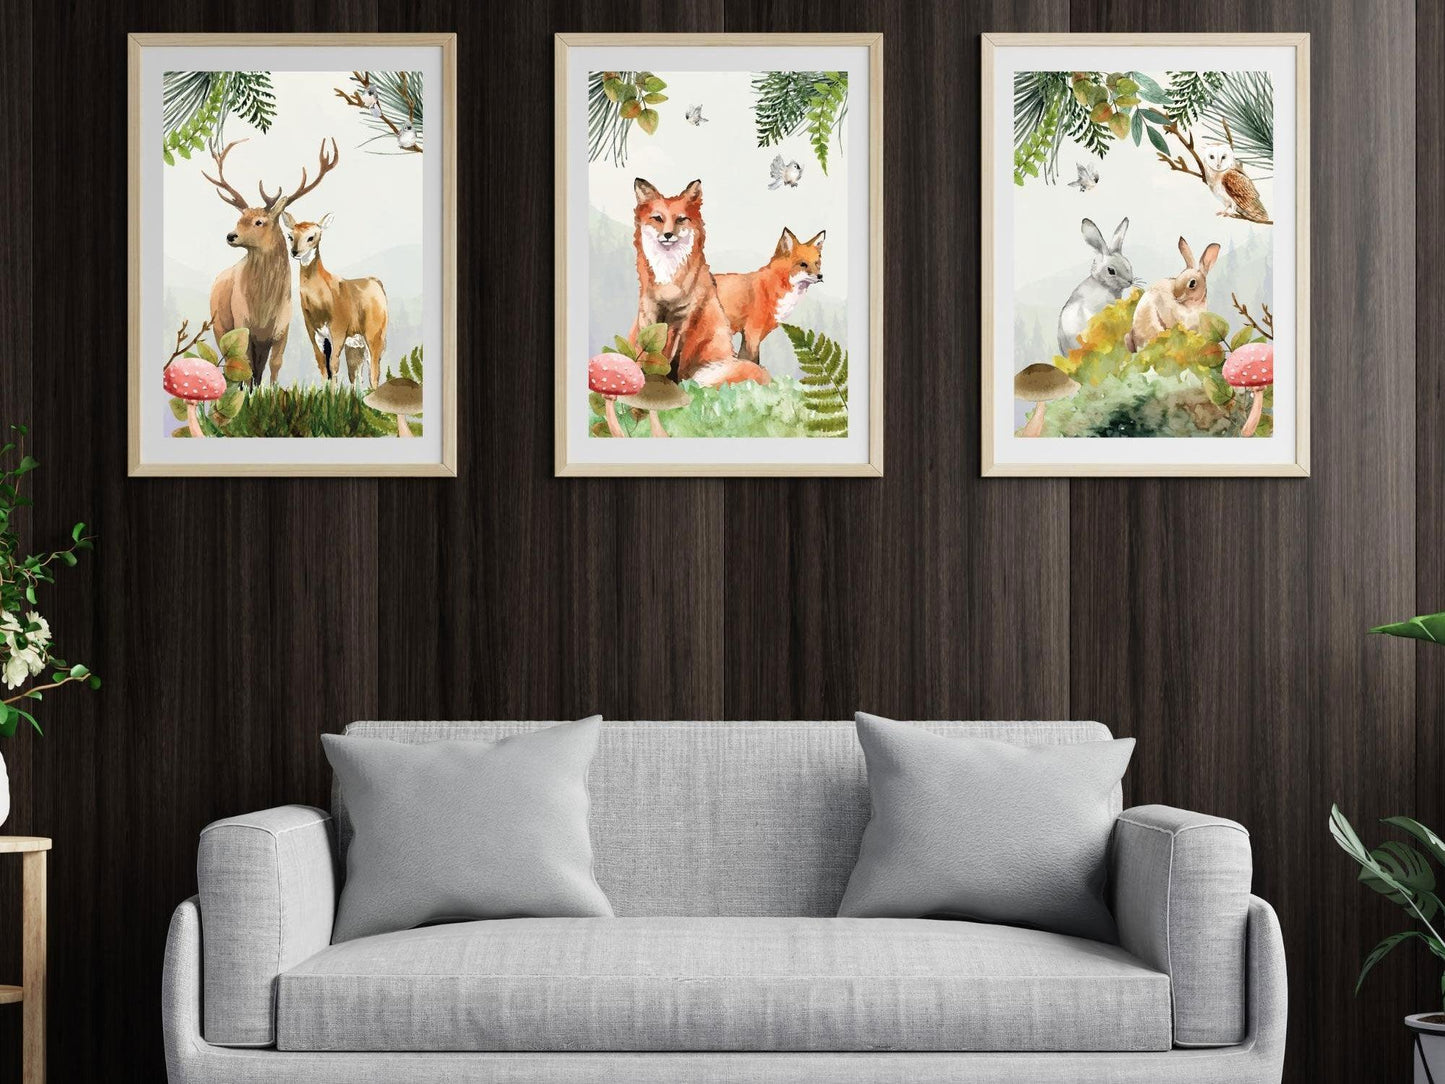 Set affiches "Forêt aquarelle" avec de beaux animaux un renard un lapin et un cerf - Imagine.affiche